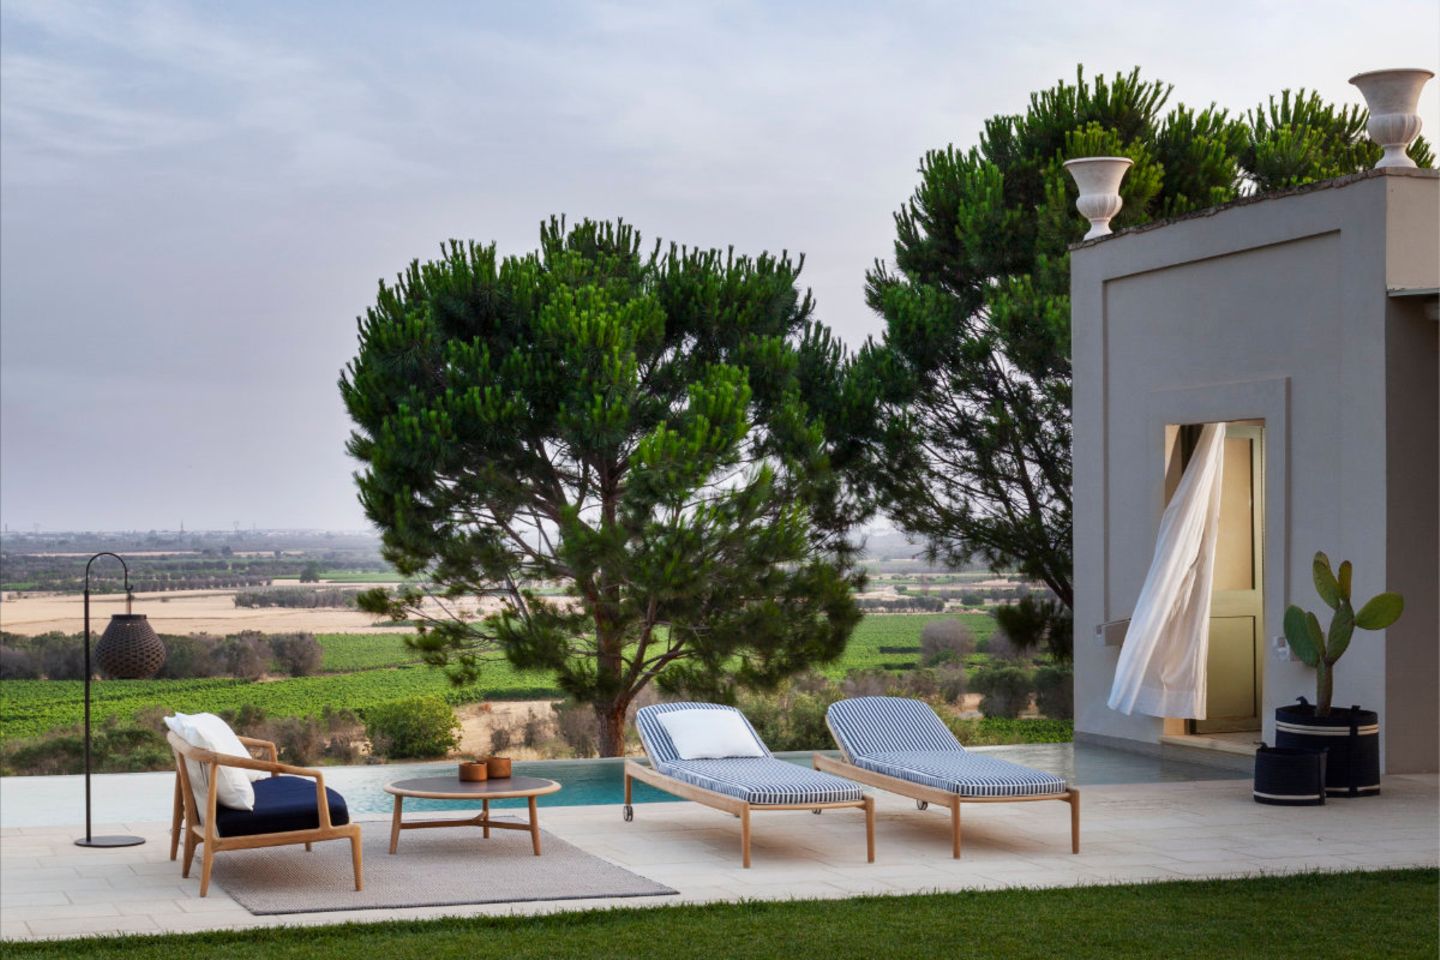 Zwei Sonnenliegen, Sofa und Tischchen vor Pool und mediterraner Landschaft